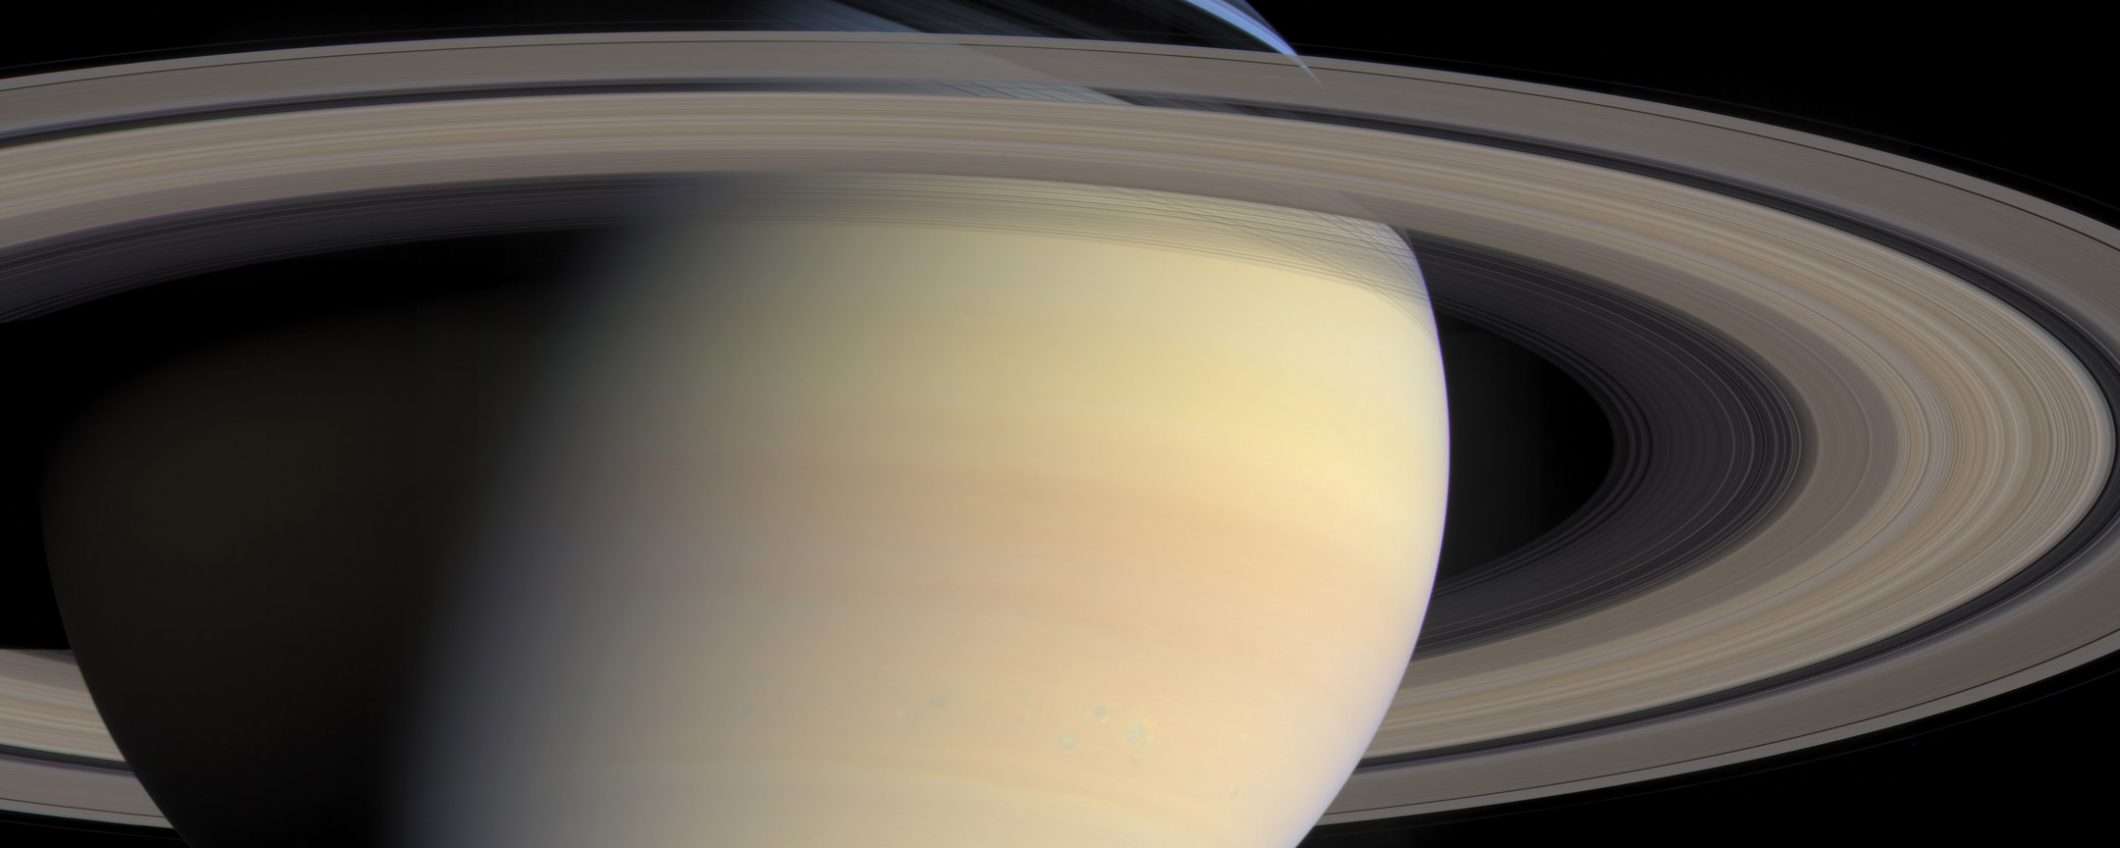 Saturno batte Giove con le sue 82 lune